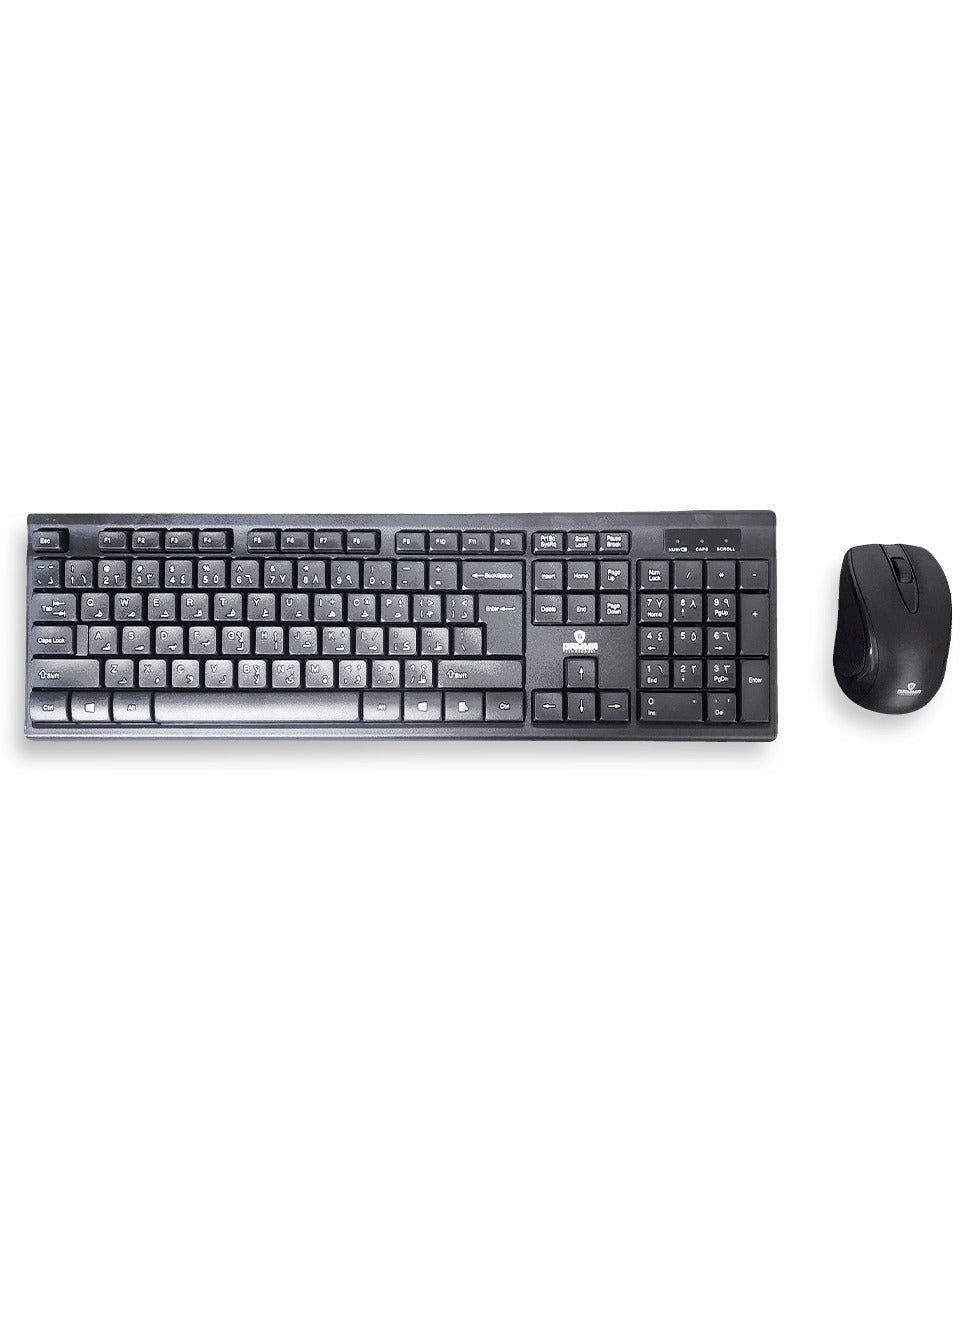 Gamma wireless keyboard & Mouse 2.4g - Silent Key , Standard 104 Key K-515